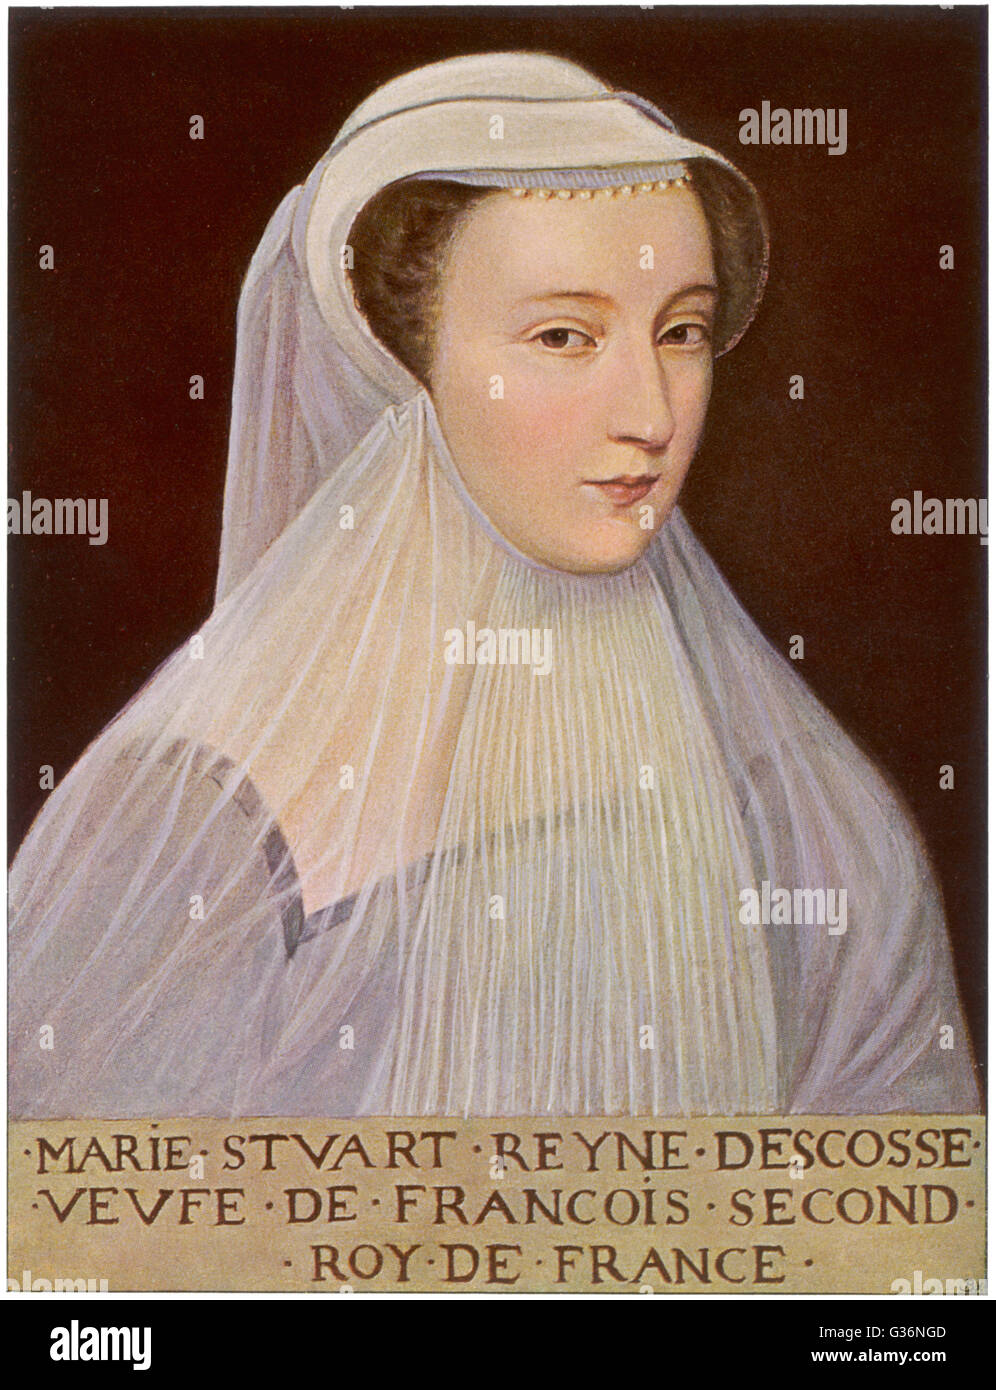 Mary königin von schottland wiki